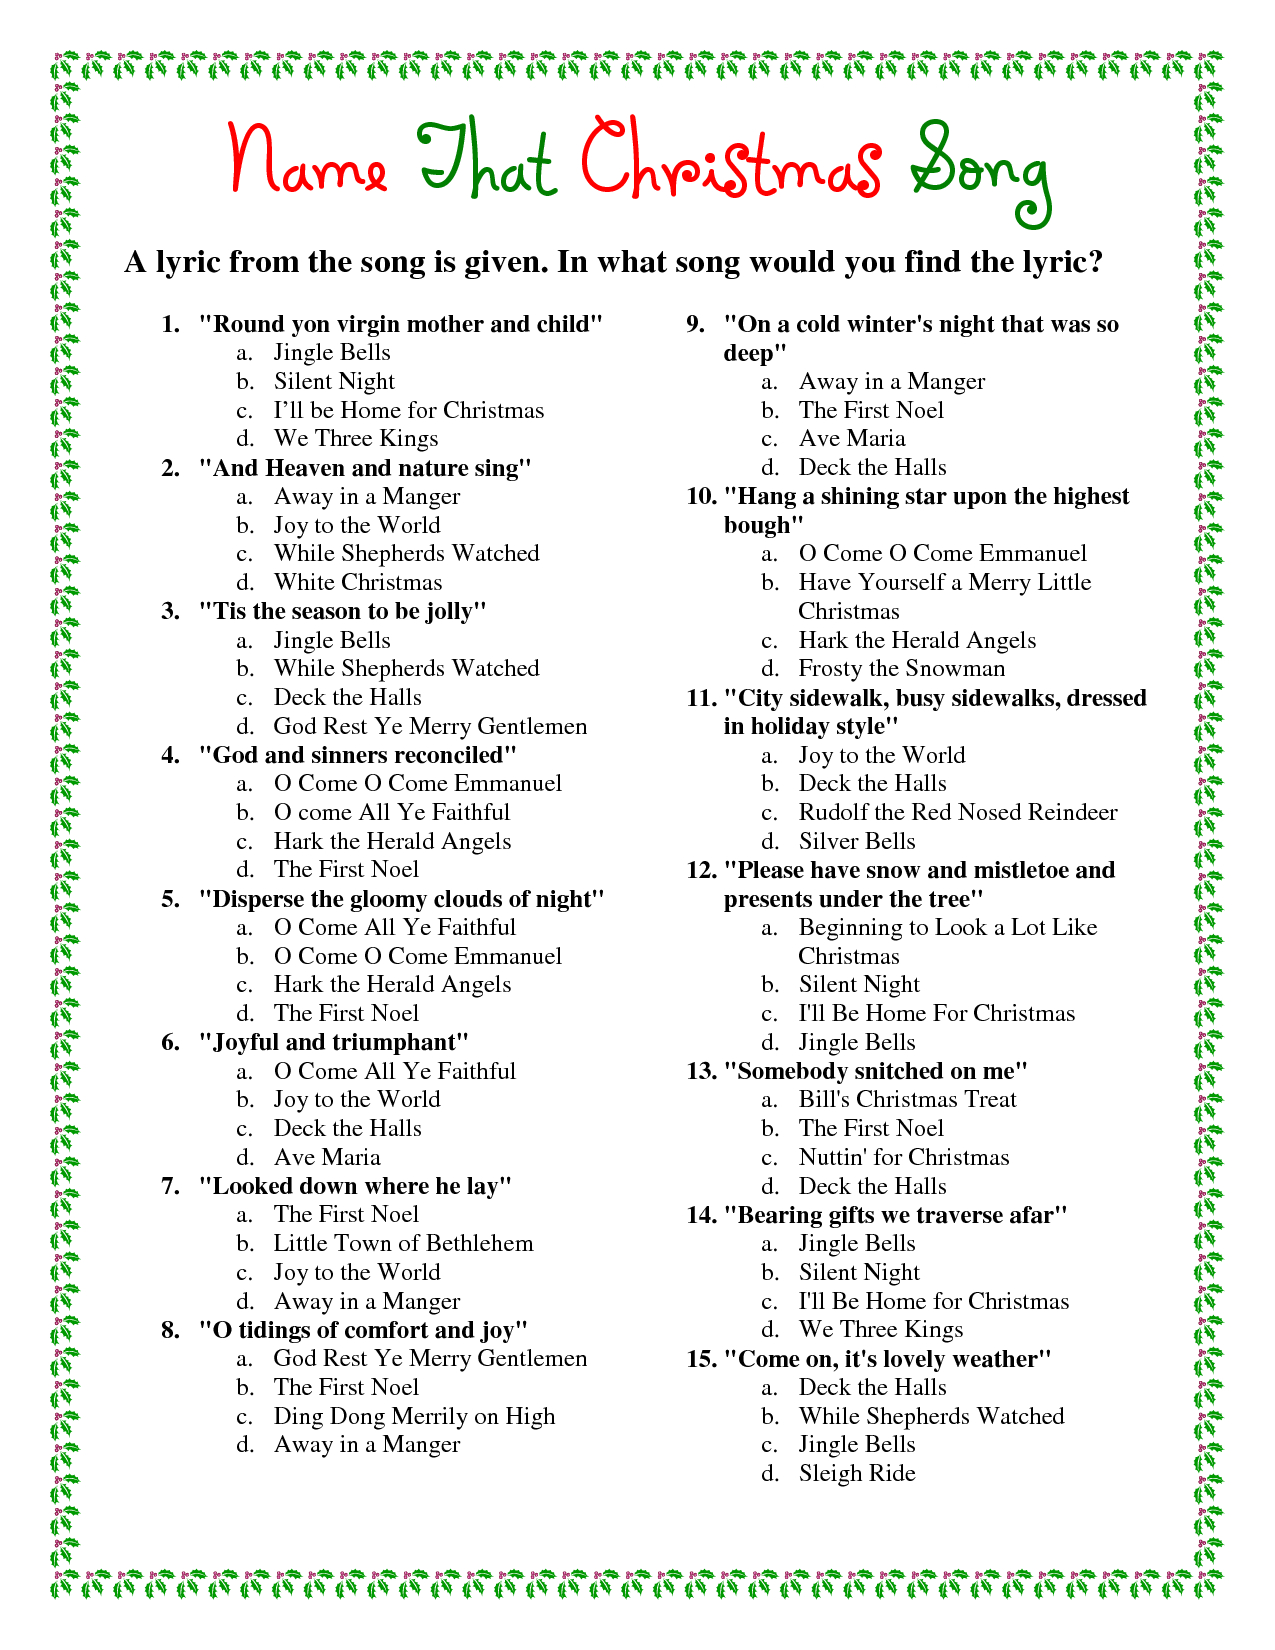 Printable Christmas Song Trivia | Christmas | Christmas Trivia - Christmas Song Lyrics Game Free Printable